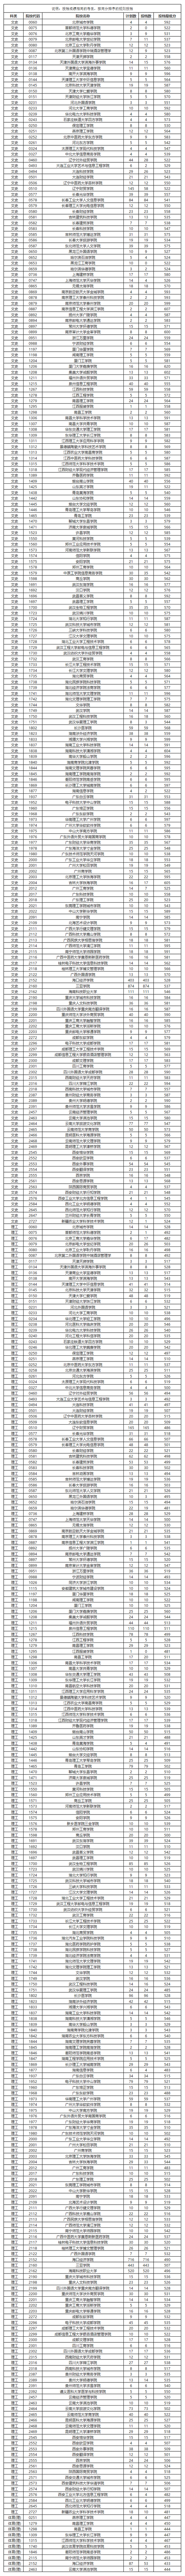 海南省2019年普通高中本科B批平行志愿投档分数线正式公布,北京城市学院592分